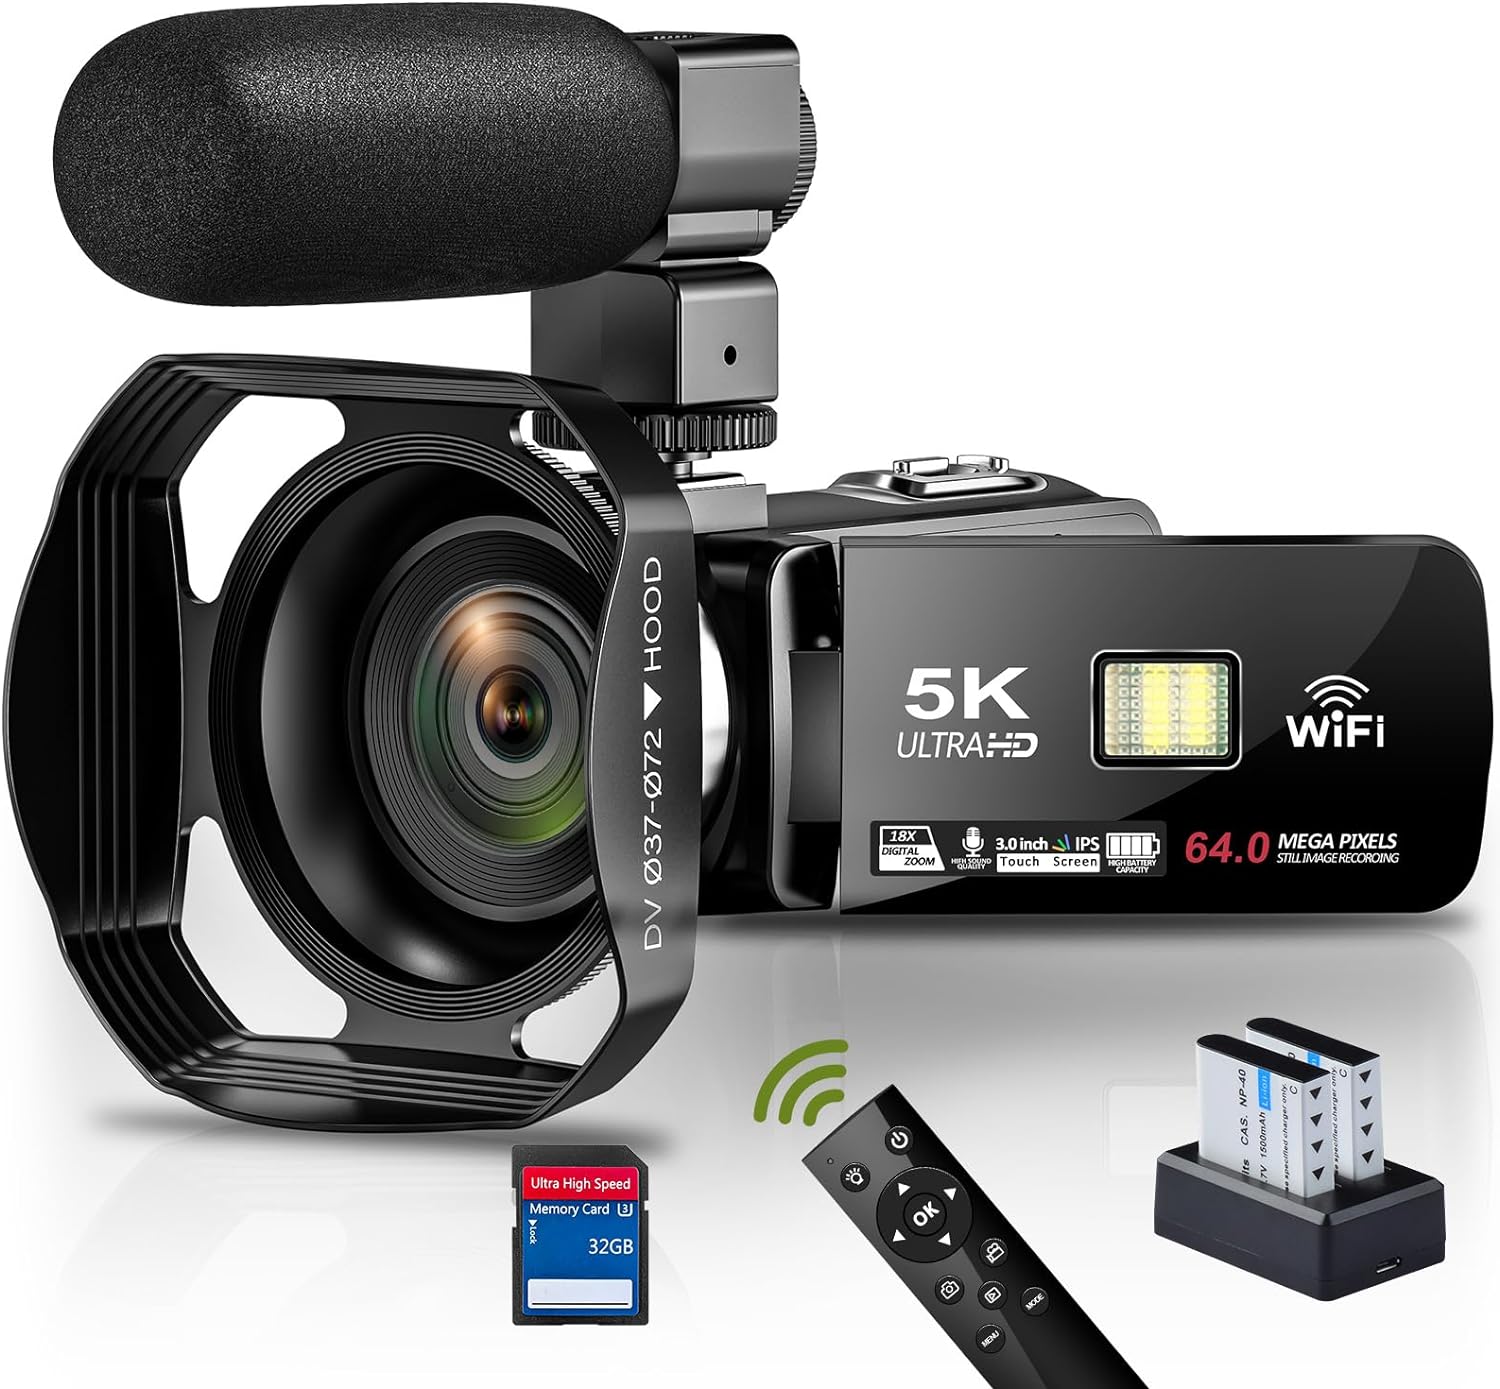 ビデオカメラ 5K WIFI機能 外付けマイクをサポート YouTubeカメラ 6400万画素 18倍デジタルズーム 3インチタッチモニター HDMI出力 IRナイトビジョン機能 vlogカメラ 360° ワイヤレスリモコン 予備バッテリー2個 32GBのSDカード 日本語システム+取扱説明書